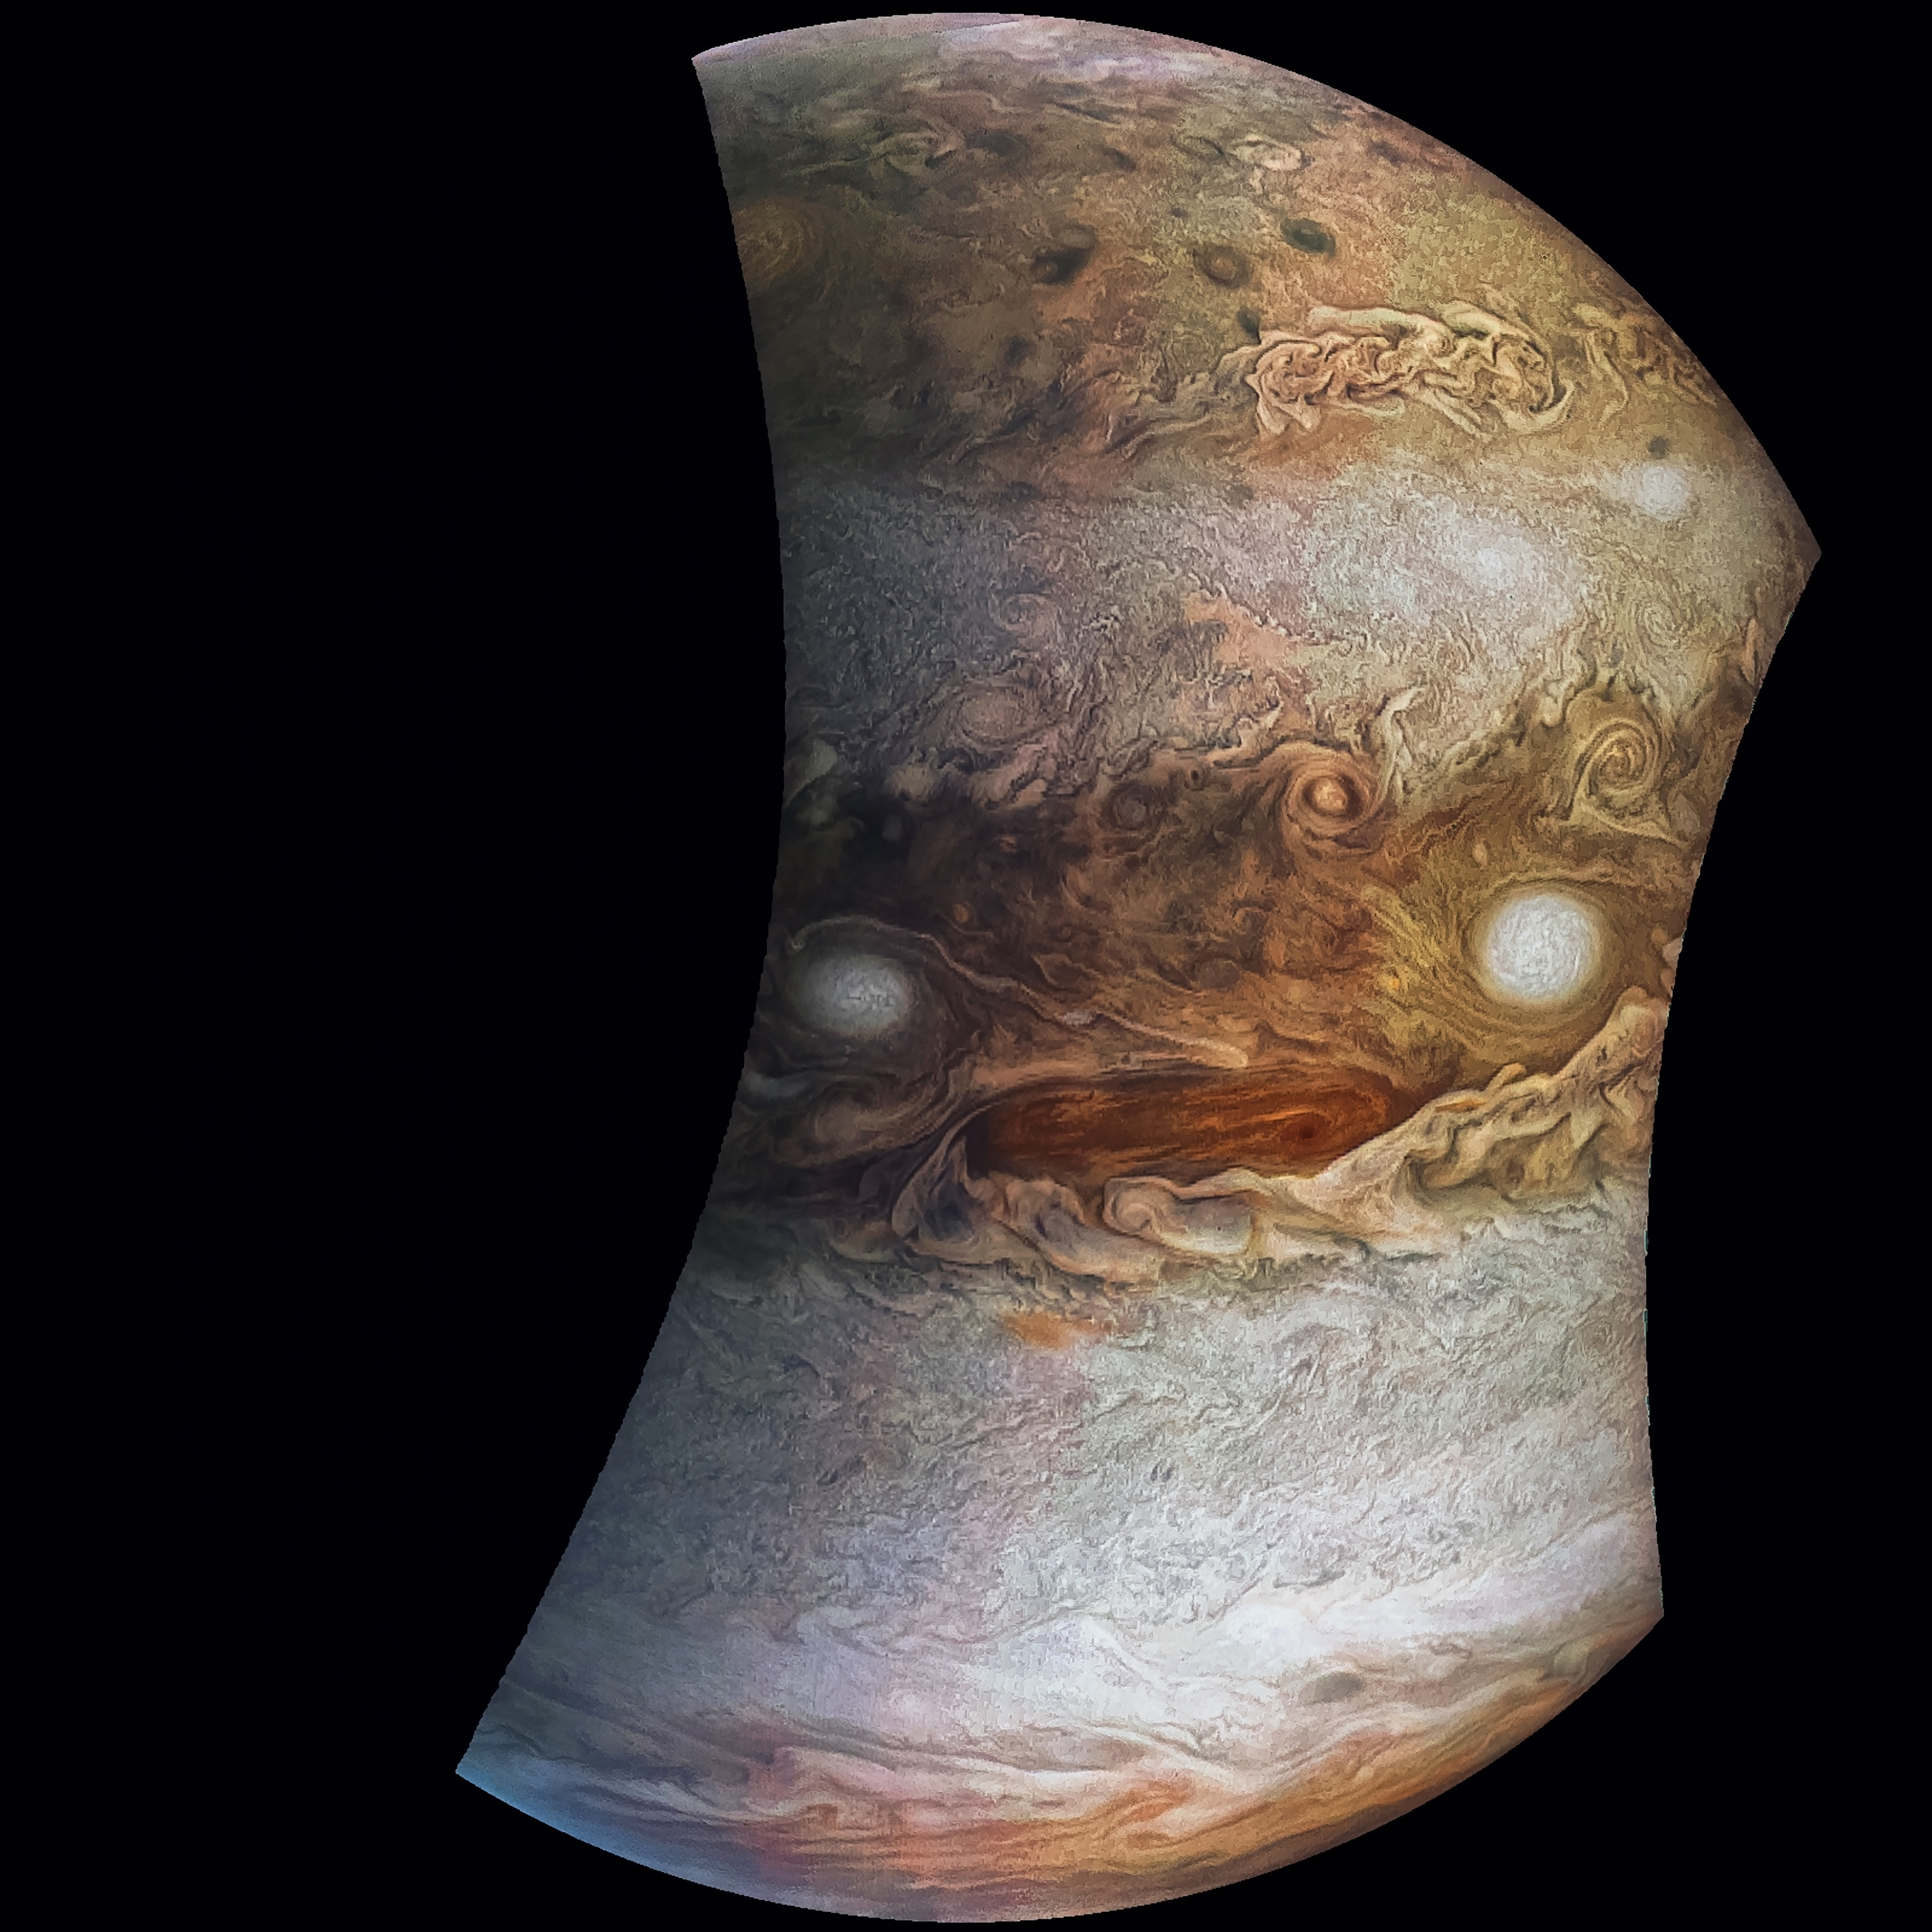 Jupiter "face"